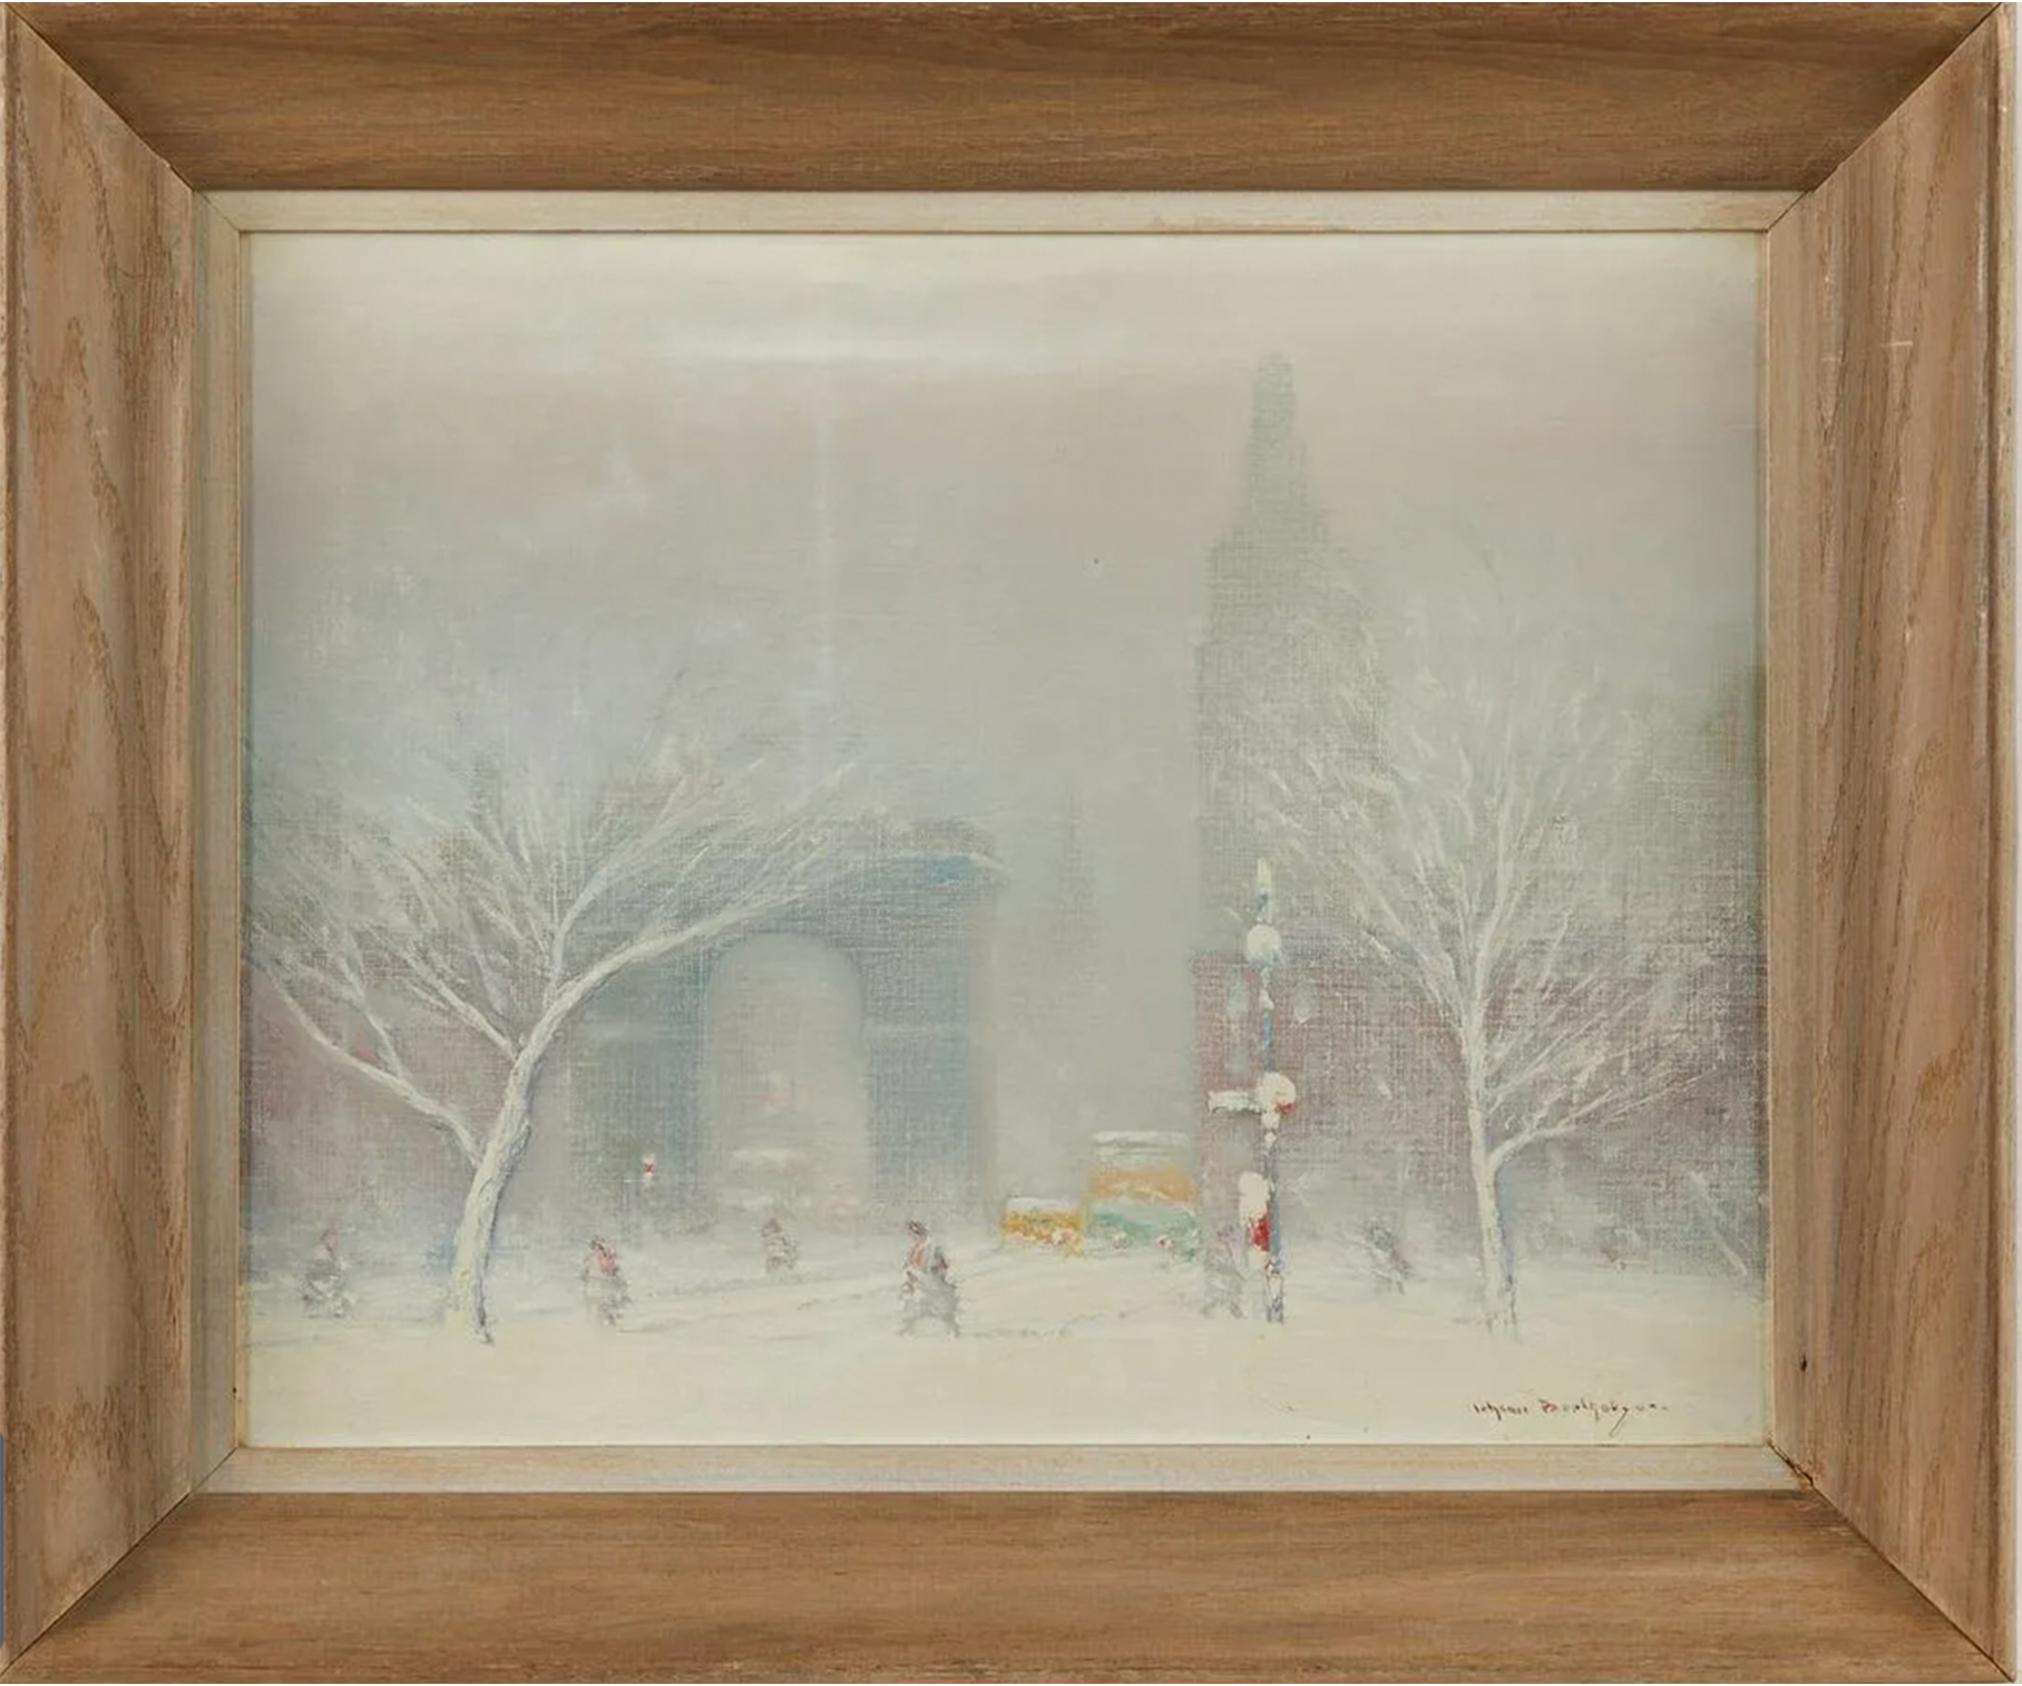 Peinture à l'huile sur toile intitulée "Winter in Washington Square, New York" représentant une paisible journée enneigée de 1952 dans l'un des parcs les plus appréciés de la ville. La composition est baignée d'une brume blanche alors que la neige